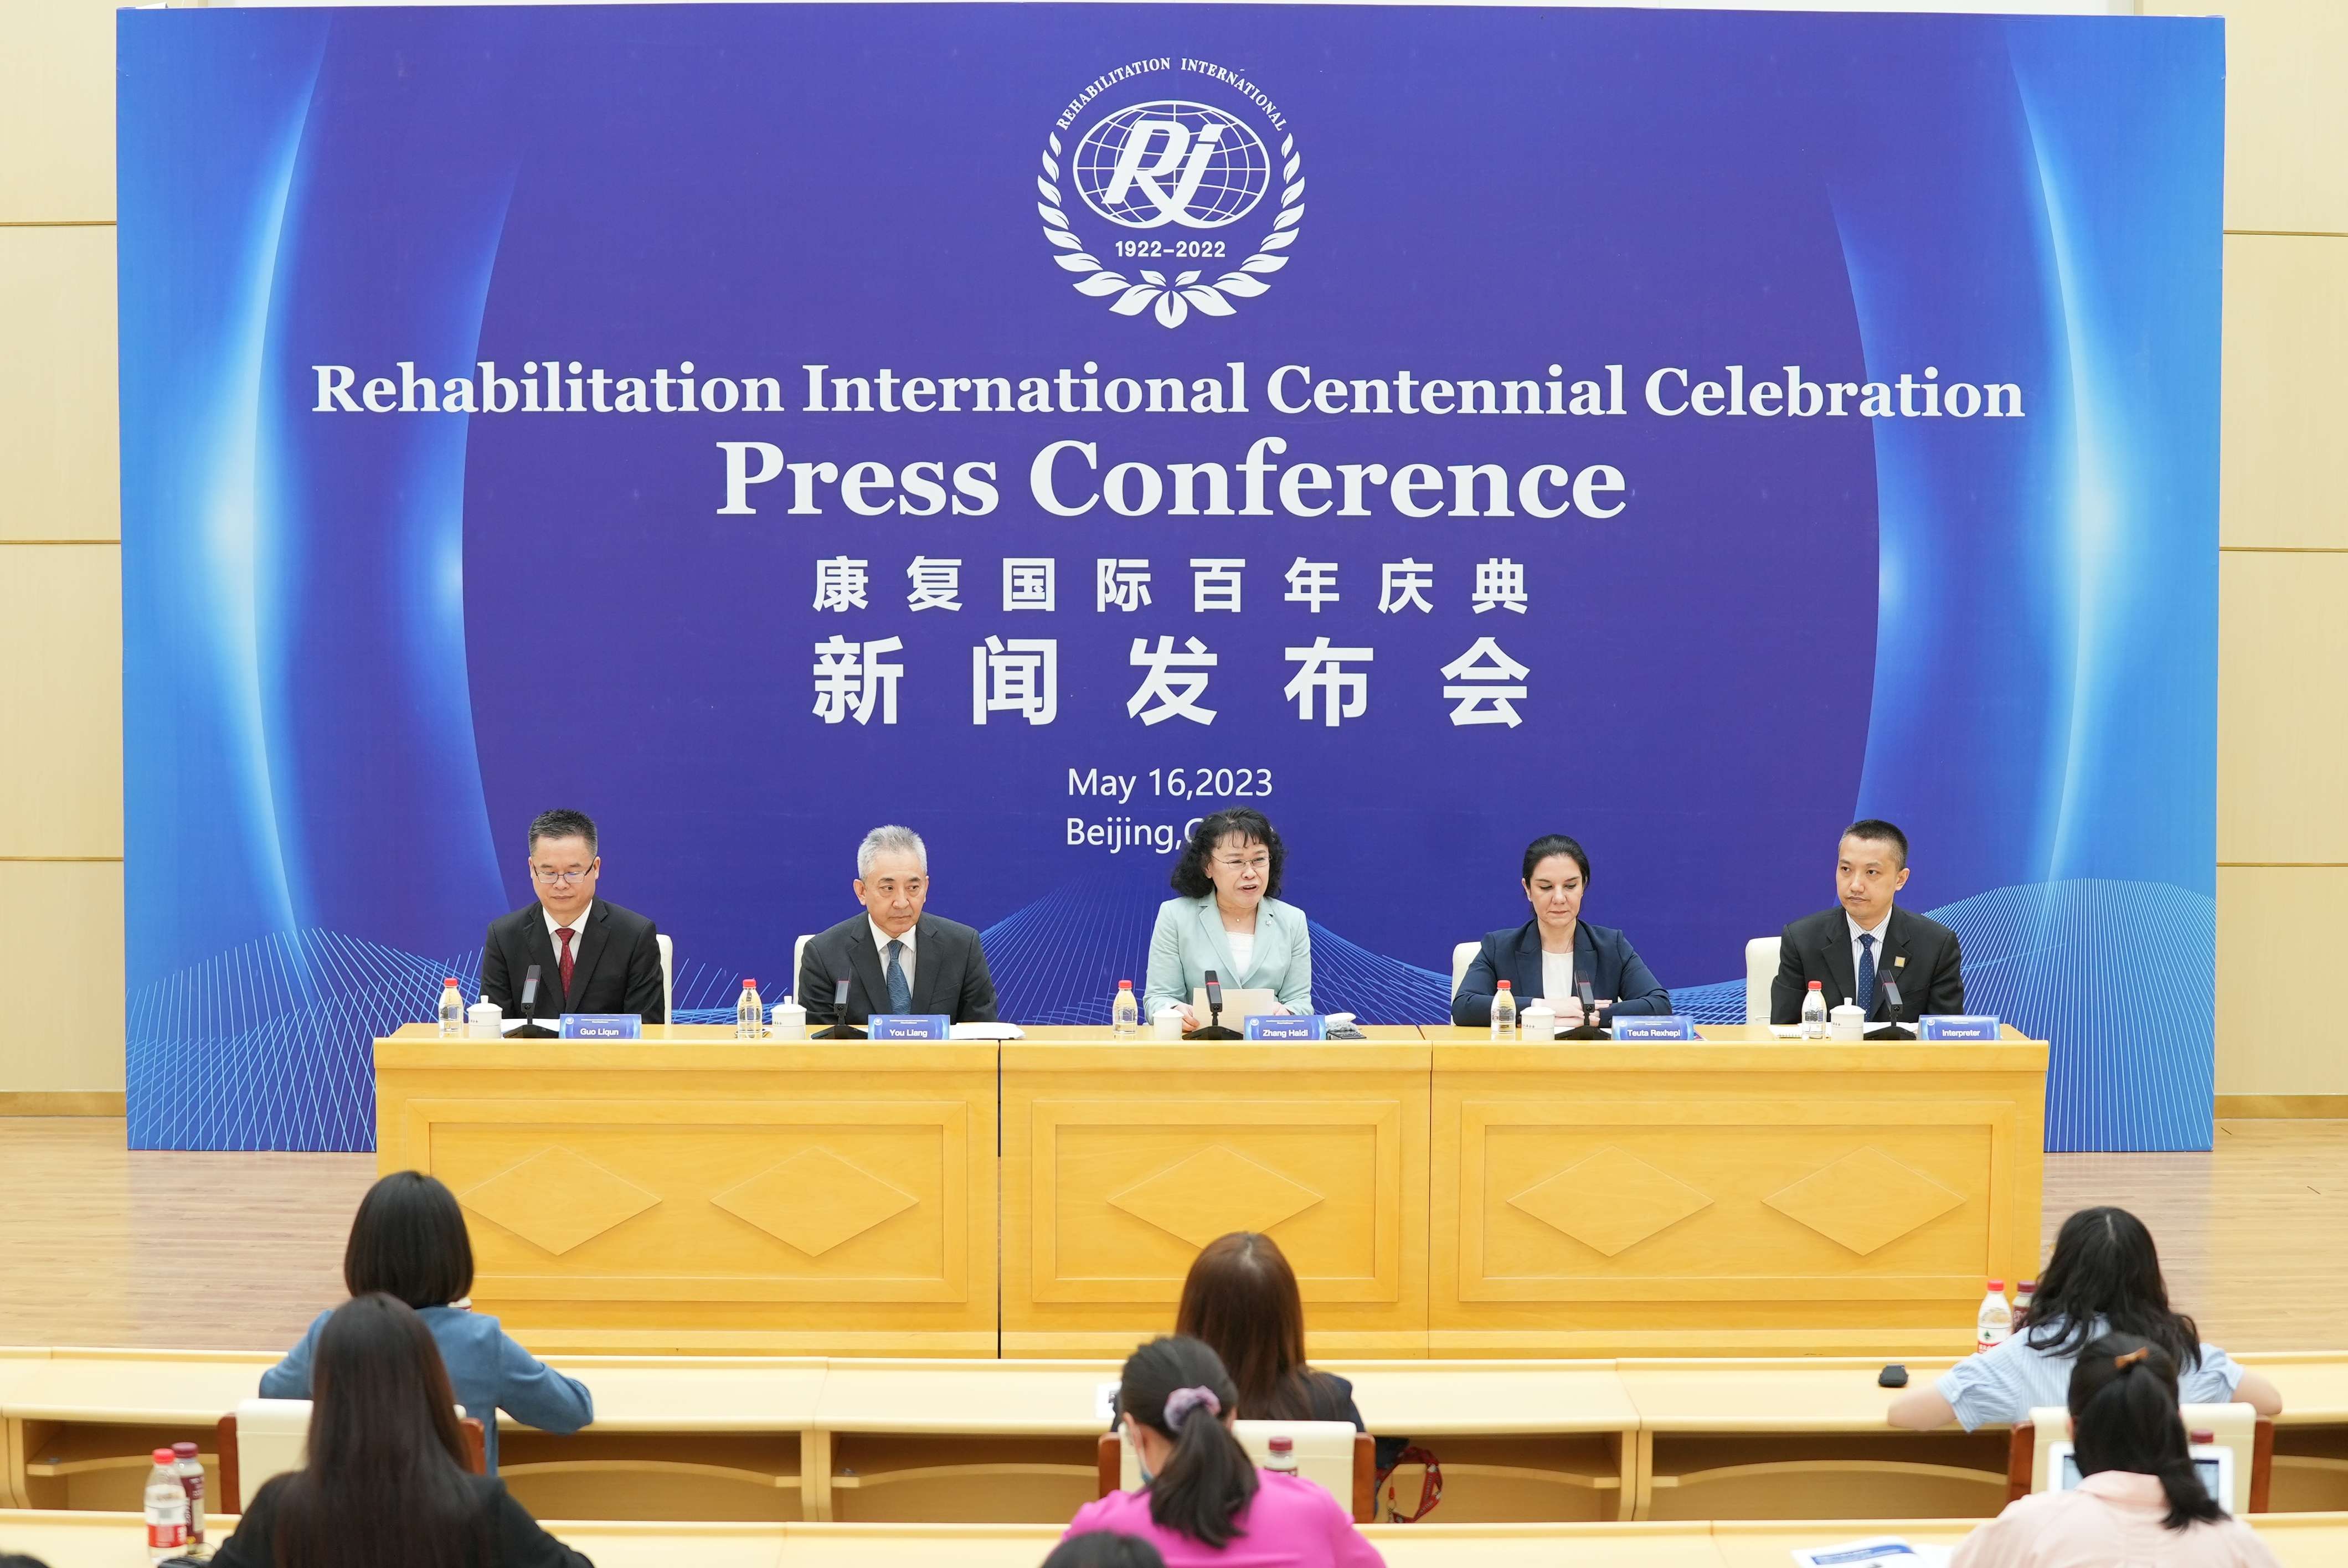 康复国际百年庆典将于5月21日在北京开幕